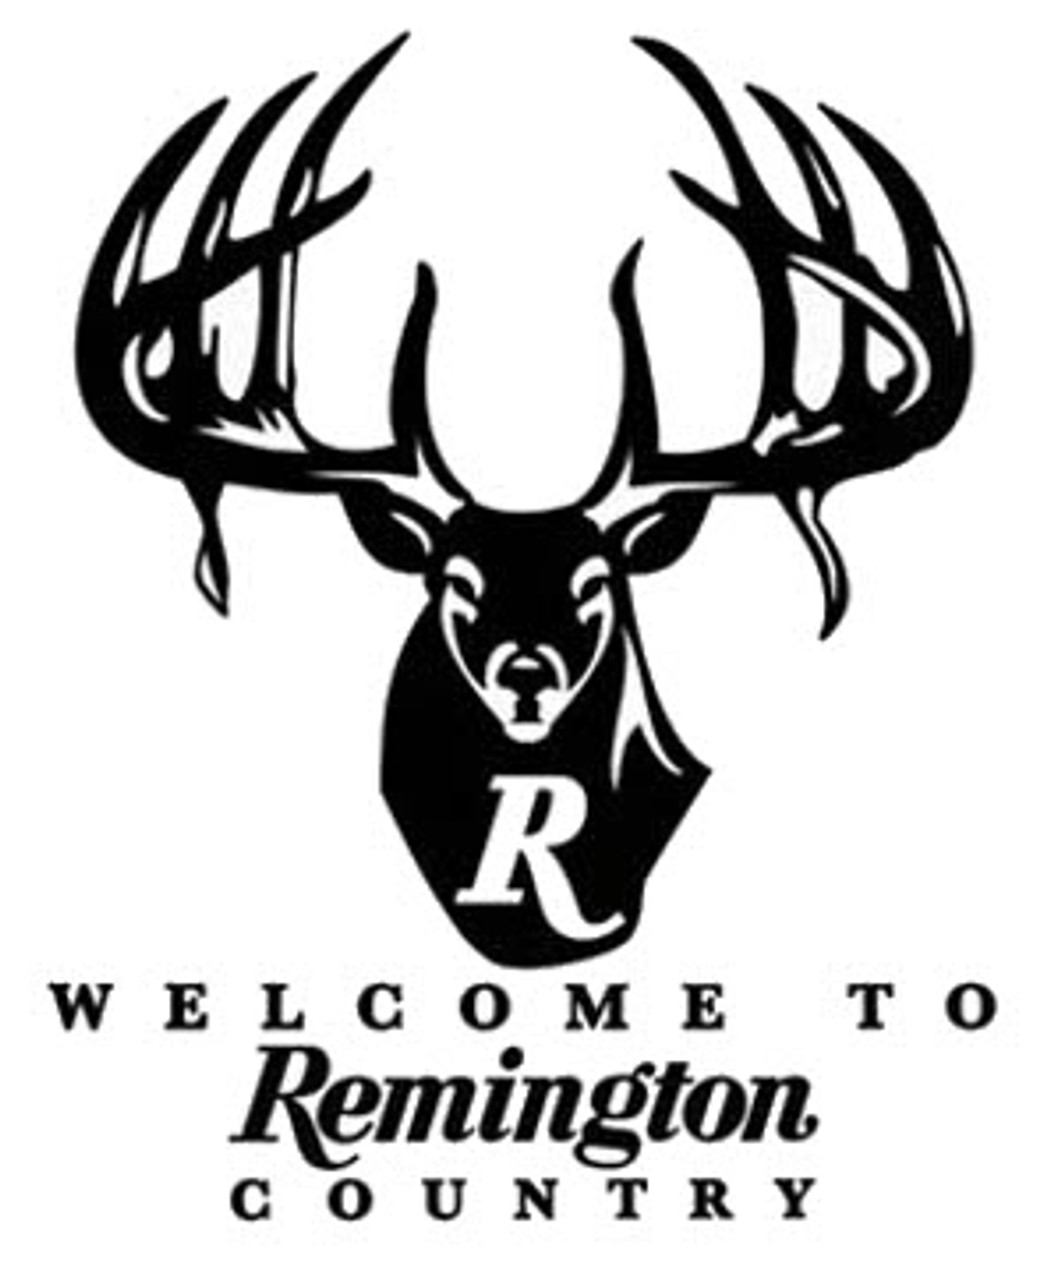 remington deer logo